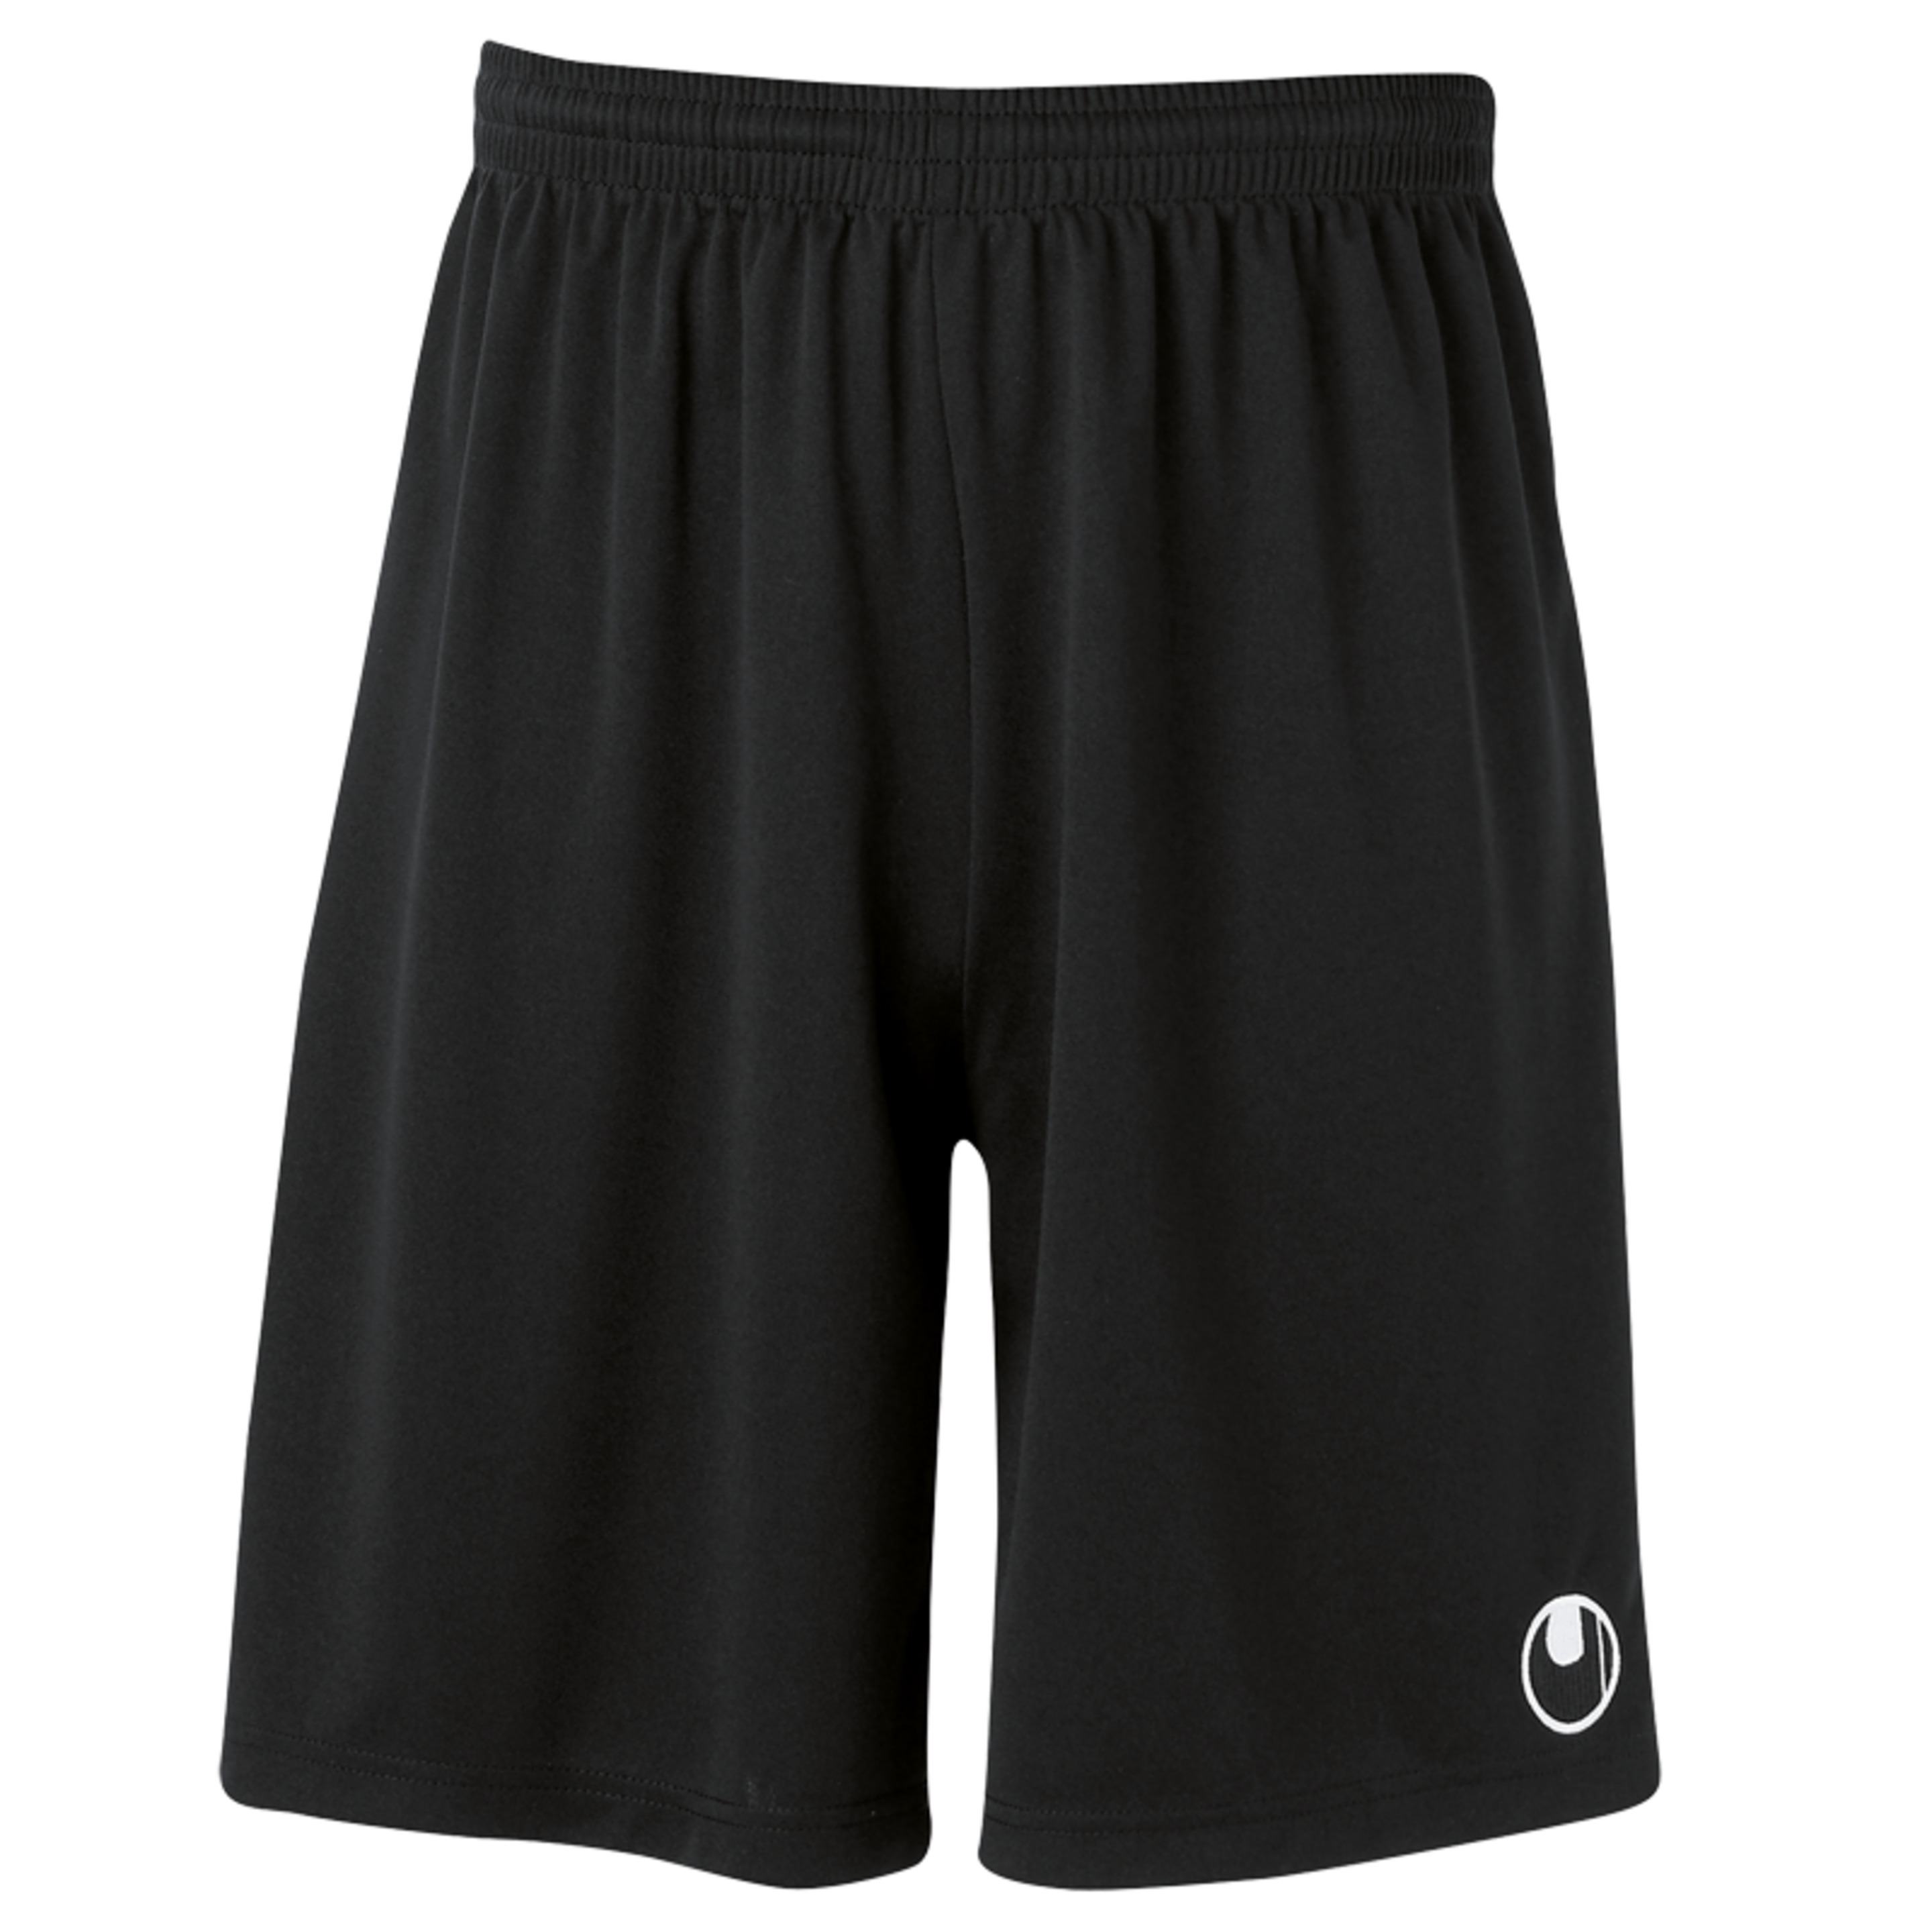 Center Ii Shorts With Slip Inside Negro Uhlsport - negro - 